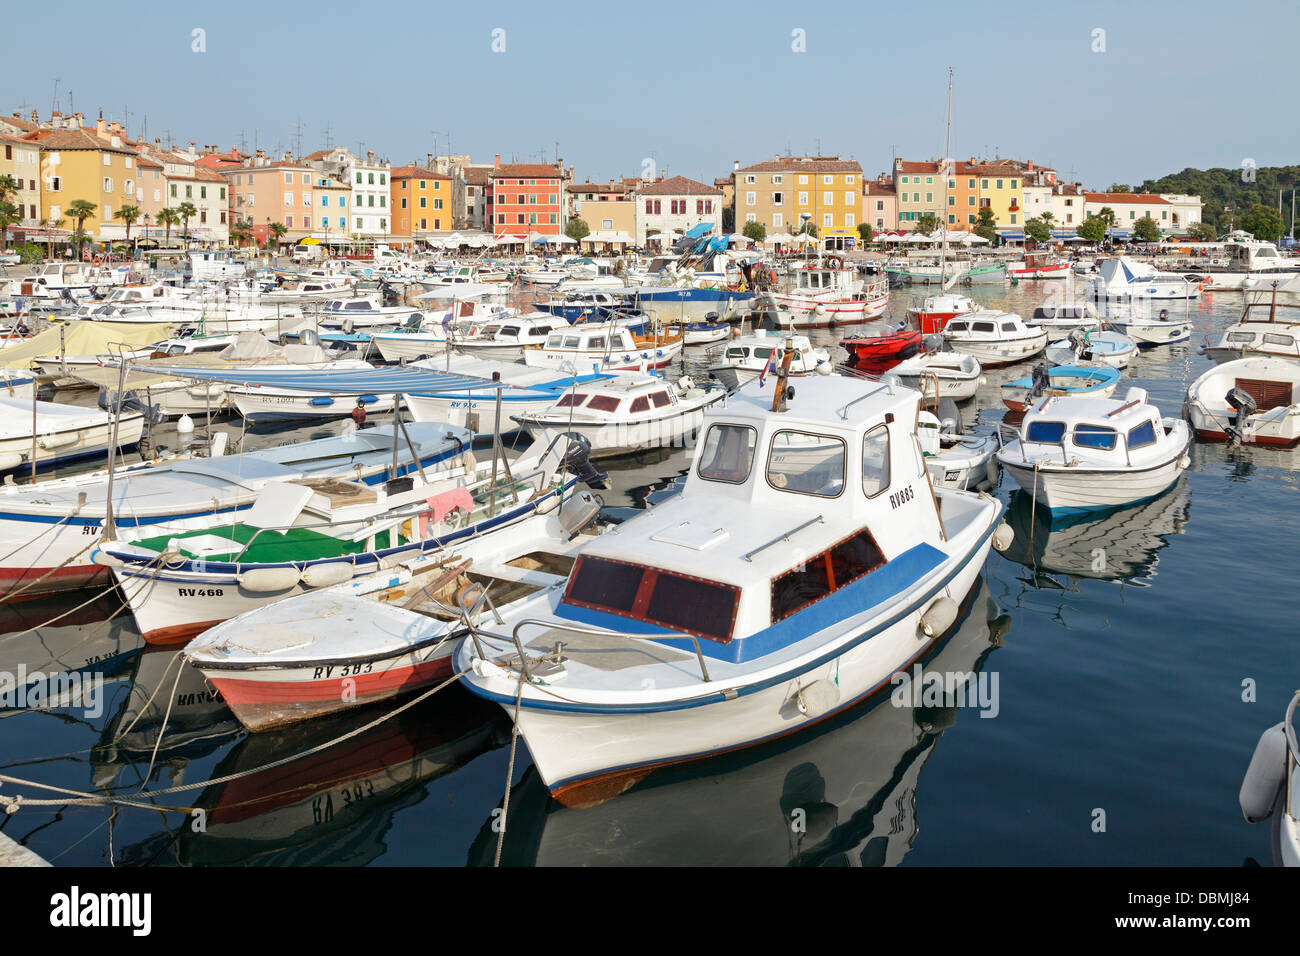 marina, Rovinj, Istria, Croatia Stock Photo